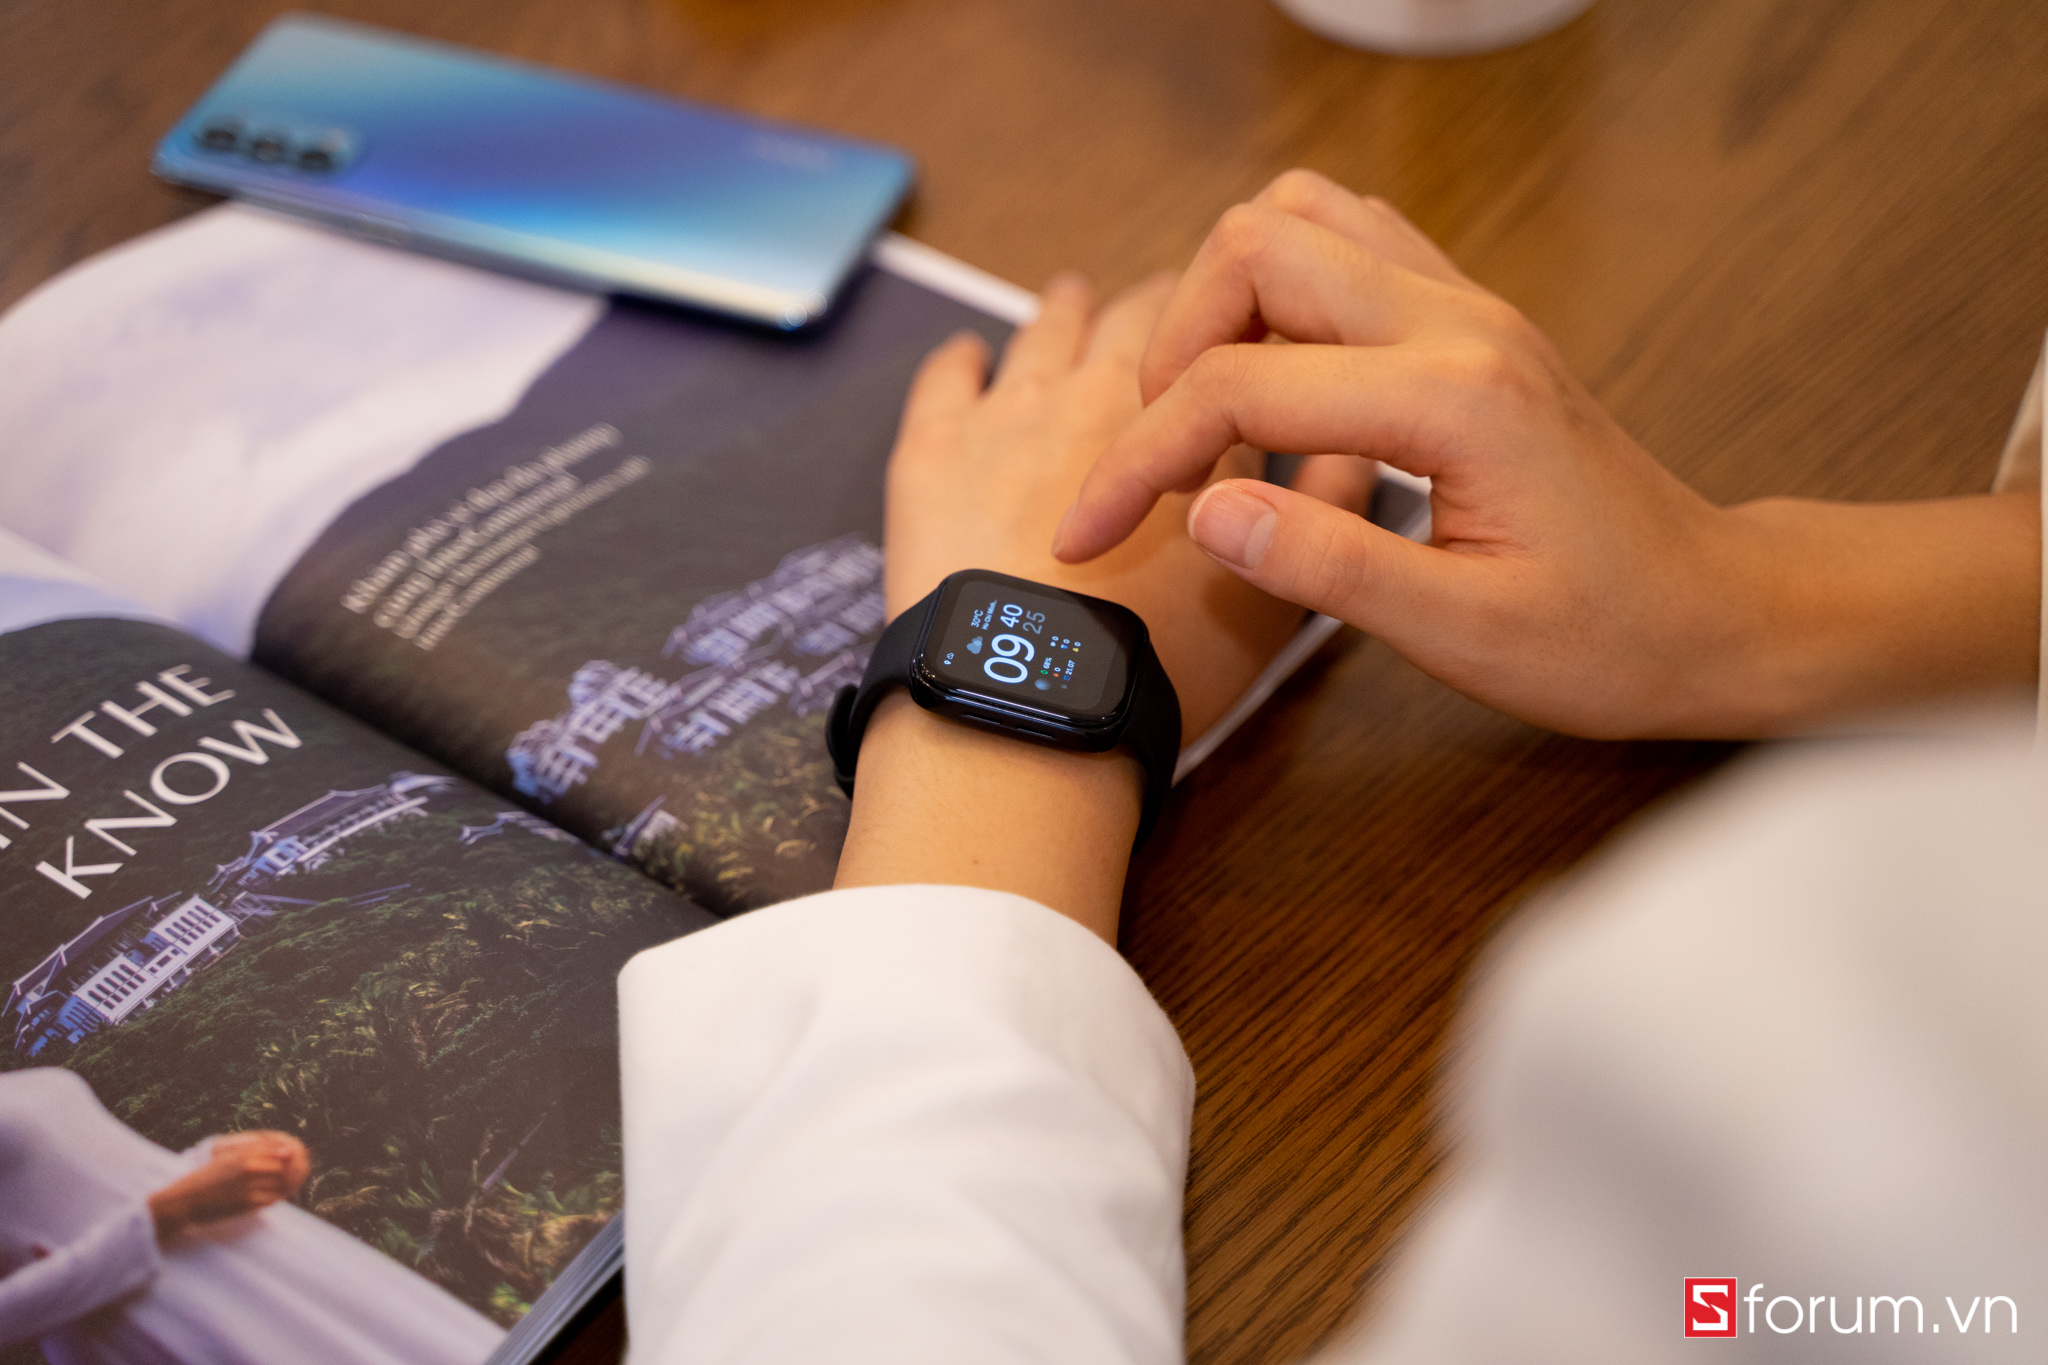 Sforum - Trang thông tin công nghệ mới nhất OPPO-watch-3 Unbox OPPO Watch: Ngoại hình bắt mắt, 2 phiên bản 41mm và 46mm, ra mắt chính thức tại Việt Nam vào ngày 1/8 